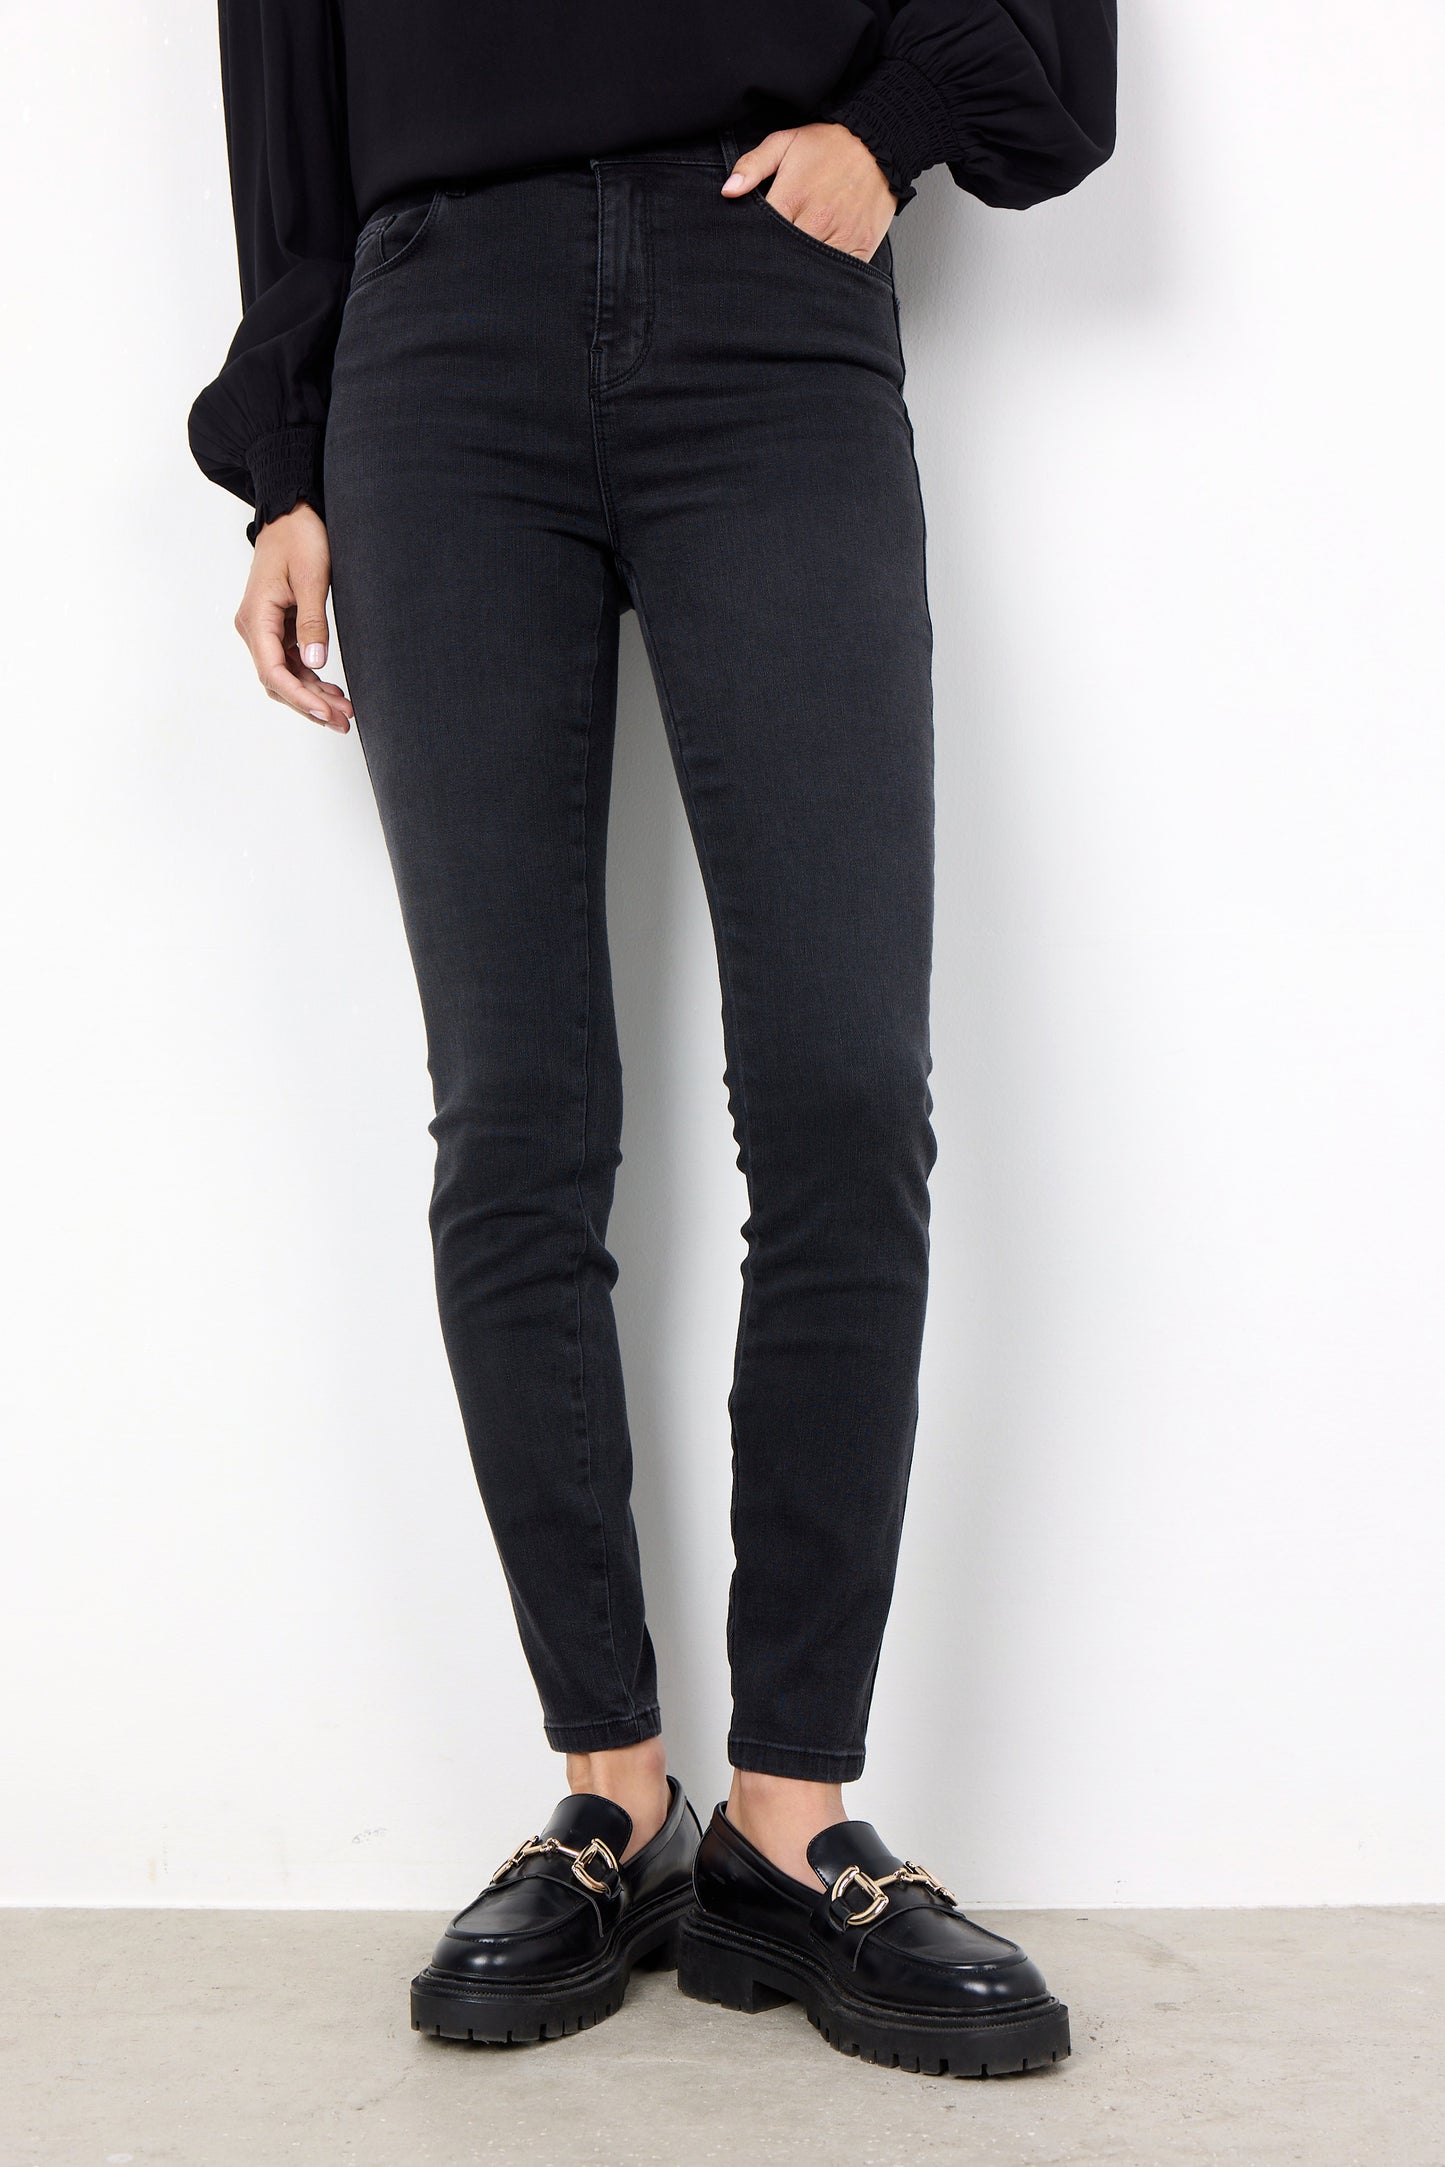 Soya Concept Kimberly Patrizia jeans